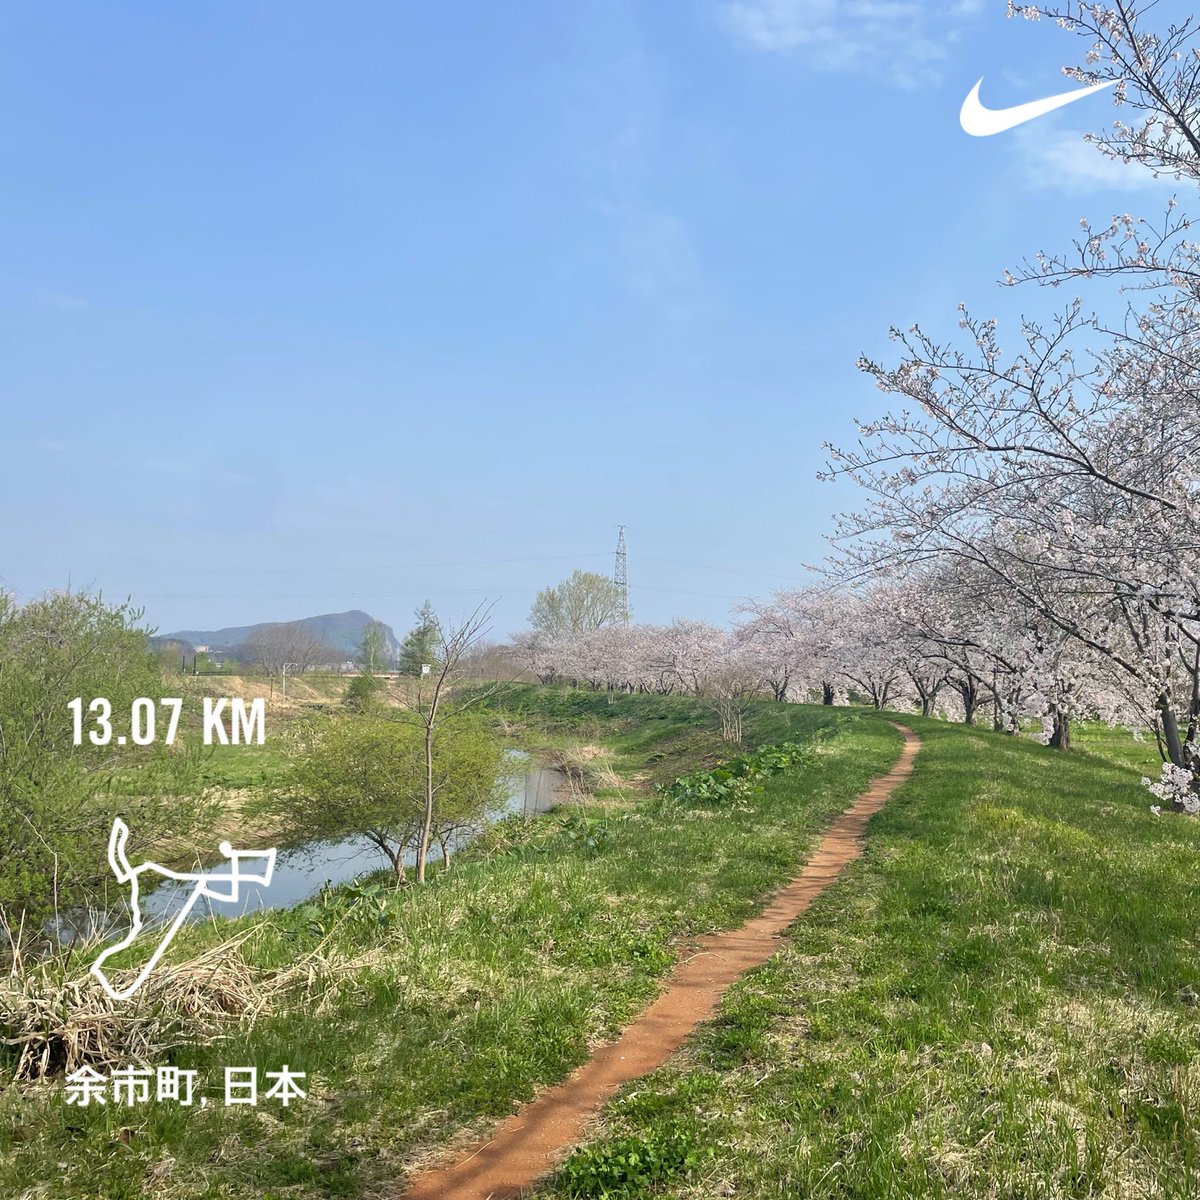 桜並木を抜けながら。
満開。
#MorningRuns #running #beautifulmorning #Hokkaido #朝ラン #ランニング #余市町 #北海道 #sundayjoy